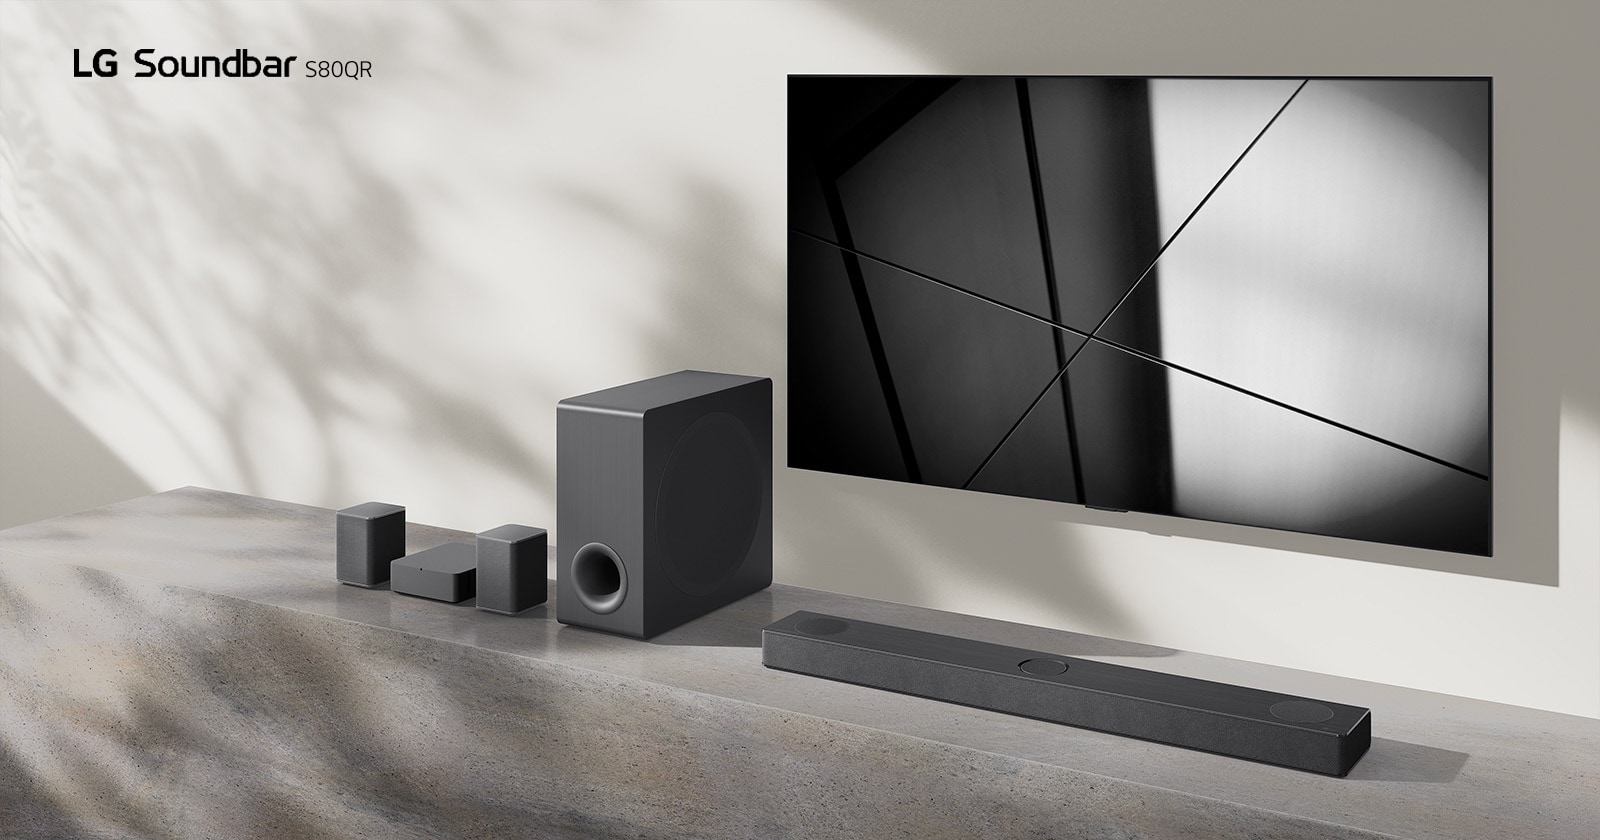 LG Sound Bar S80QR i LG TV postavljeni su zajedno u dnevnoj sobi. Televizor je uključen i prikazuje se crno-bela slika.